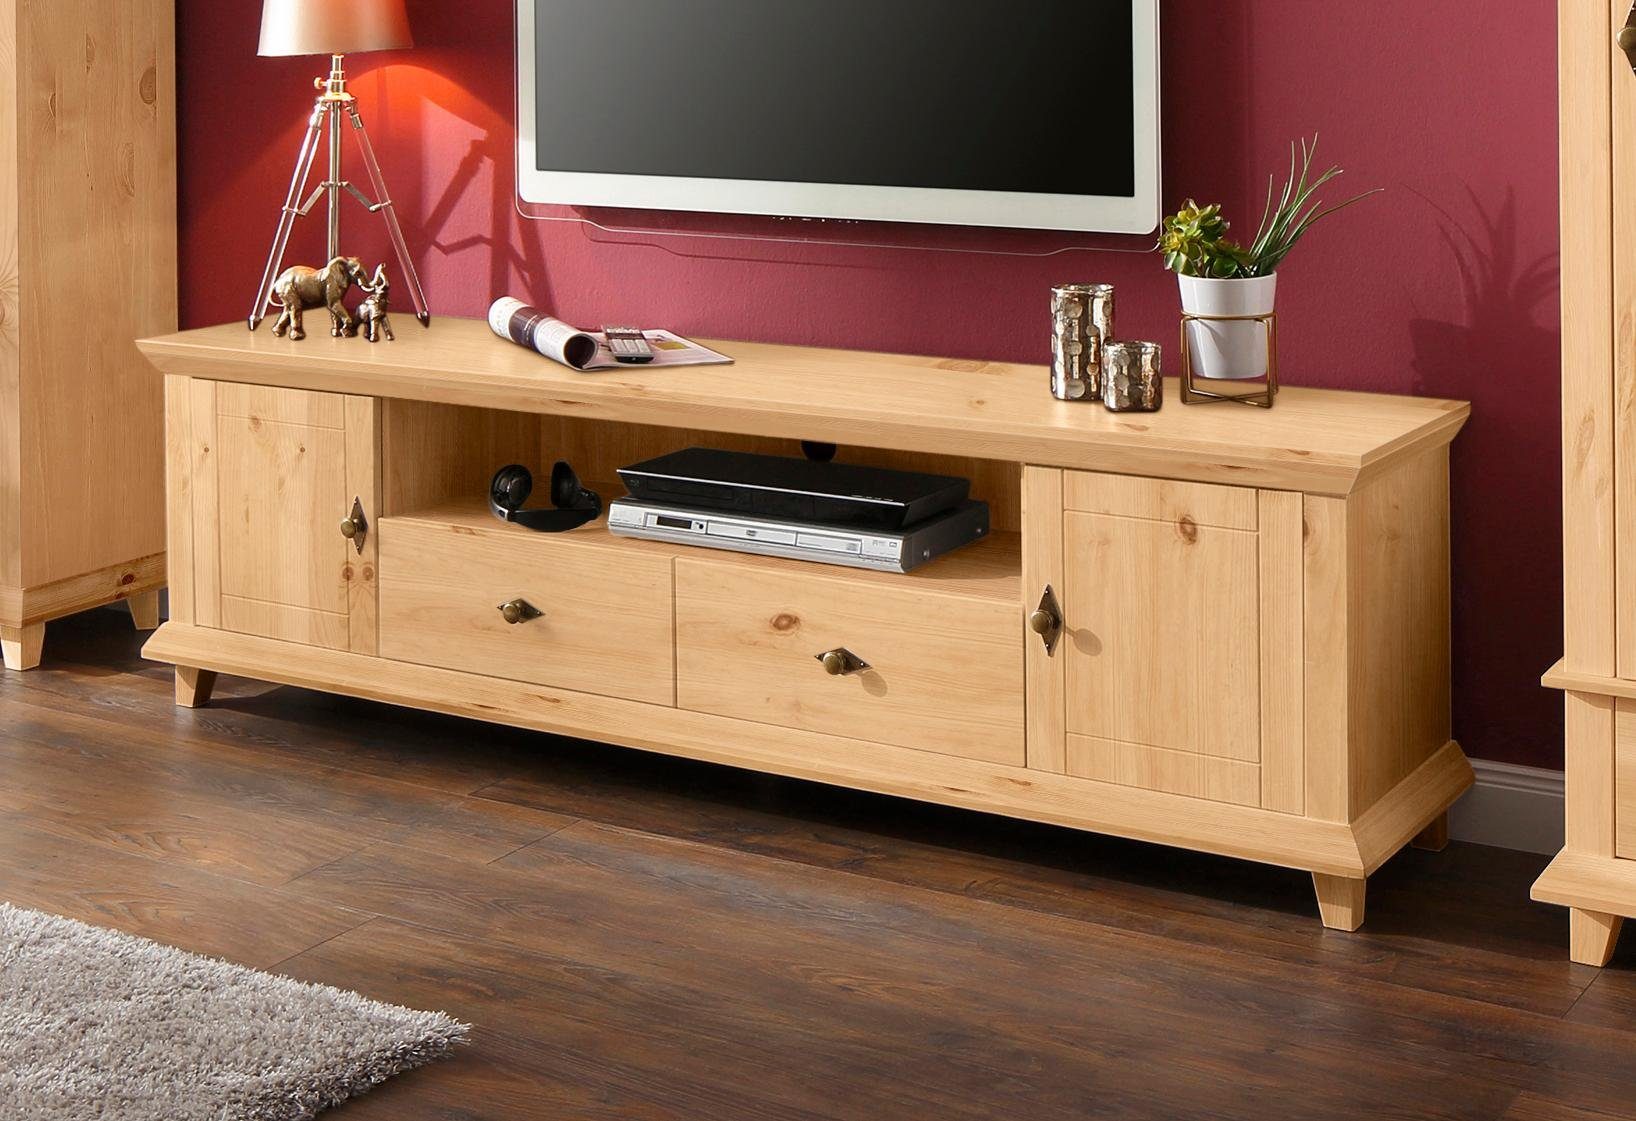 Home Affaire Home affaire tv-meubel Gali, massief hout, in 2 afmetingen, met praktische snoergeleiding